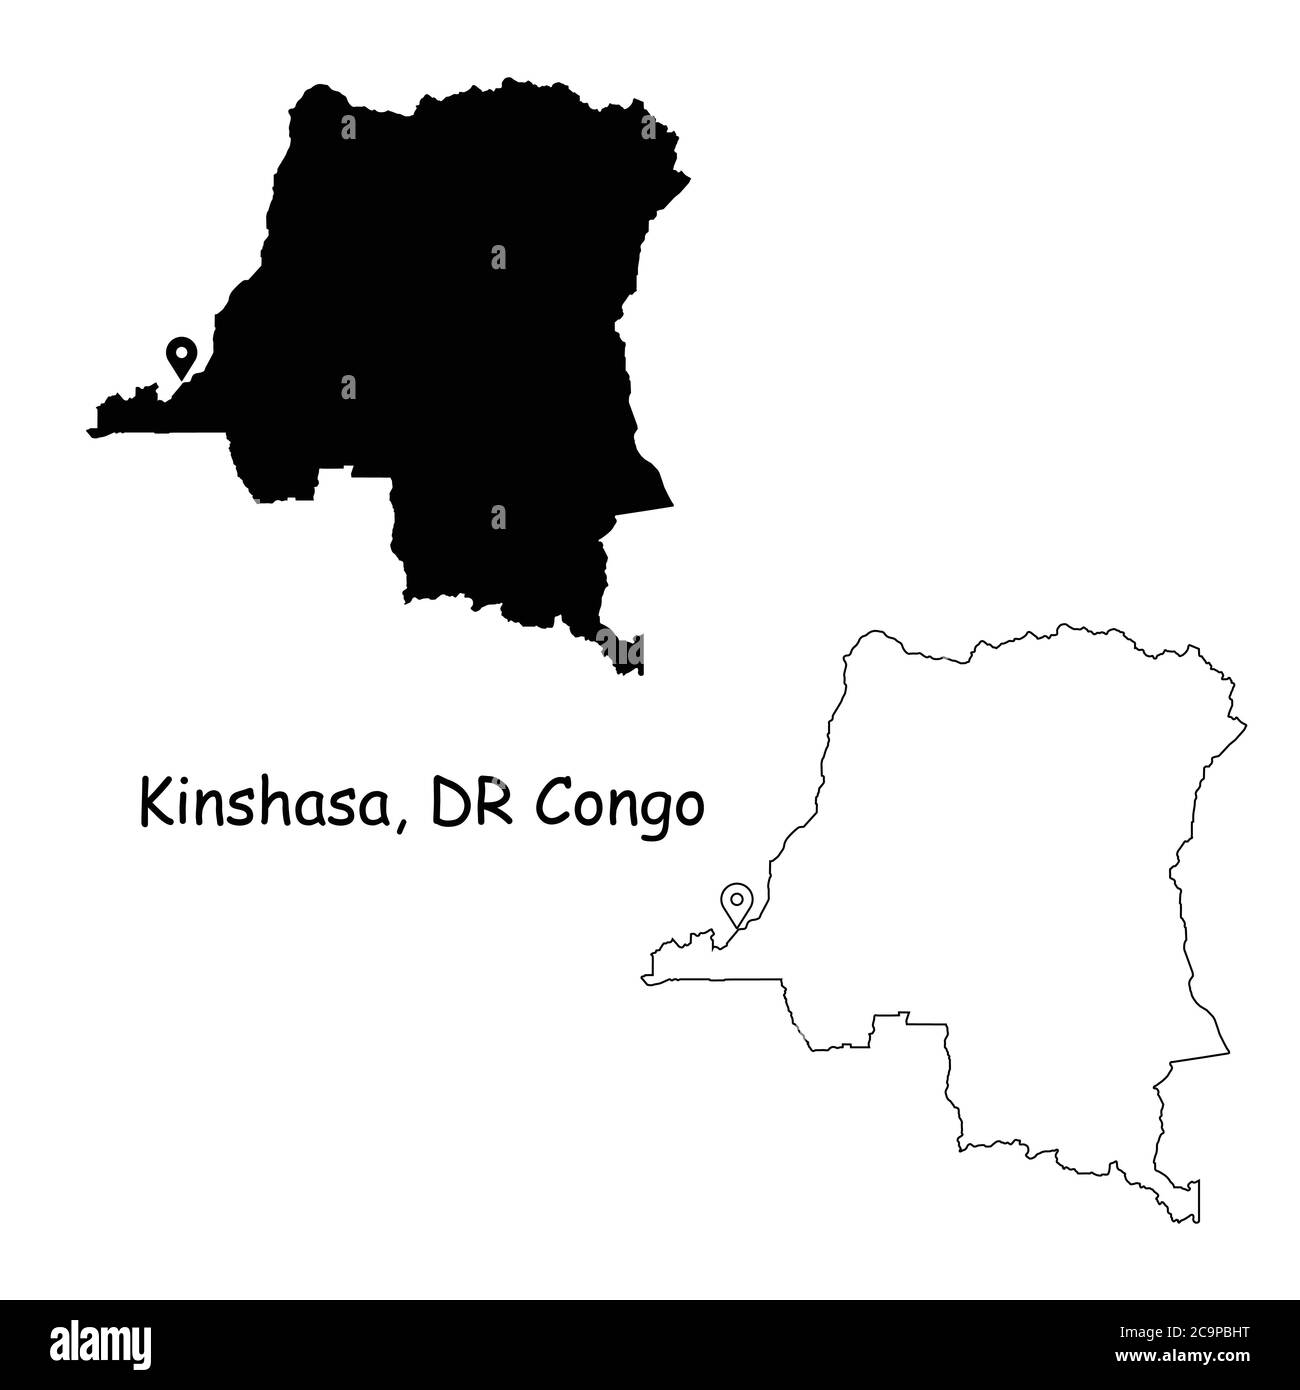 Kinshasa Demokratische Republik Kongo. Detaillierte Landkarte mit Lage Pin auf Hauptstadt. Schwarze Silhouette und Umrisskarten isoliert auf Weiß Stock Vektor